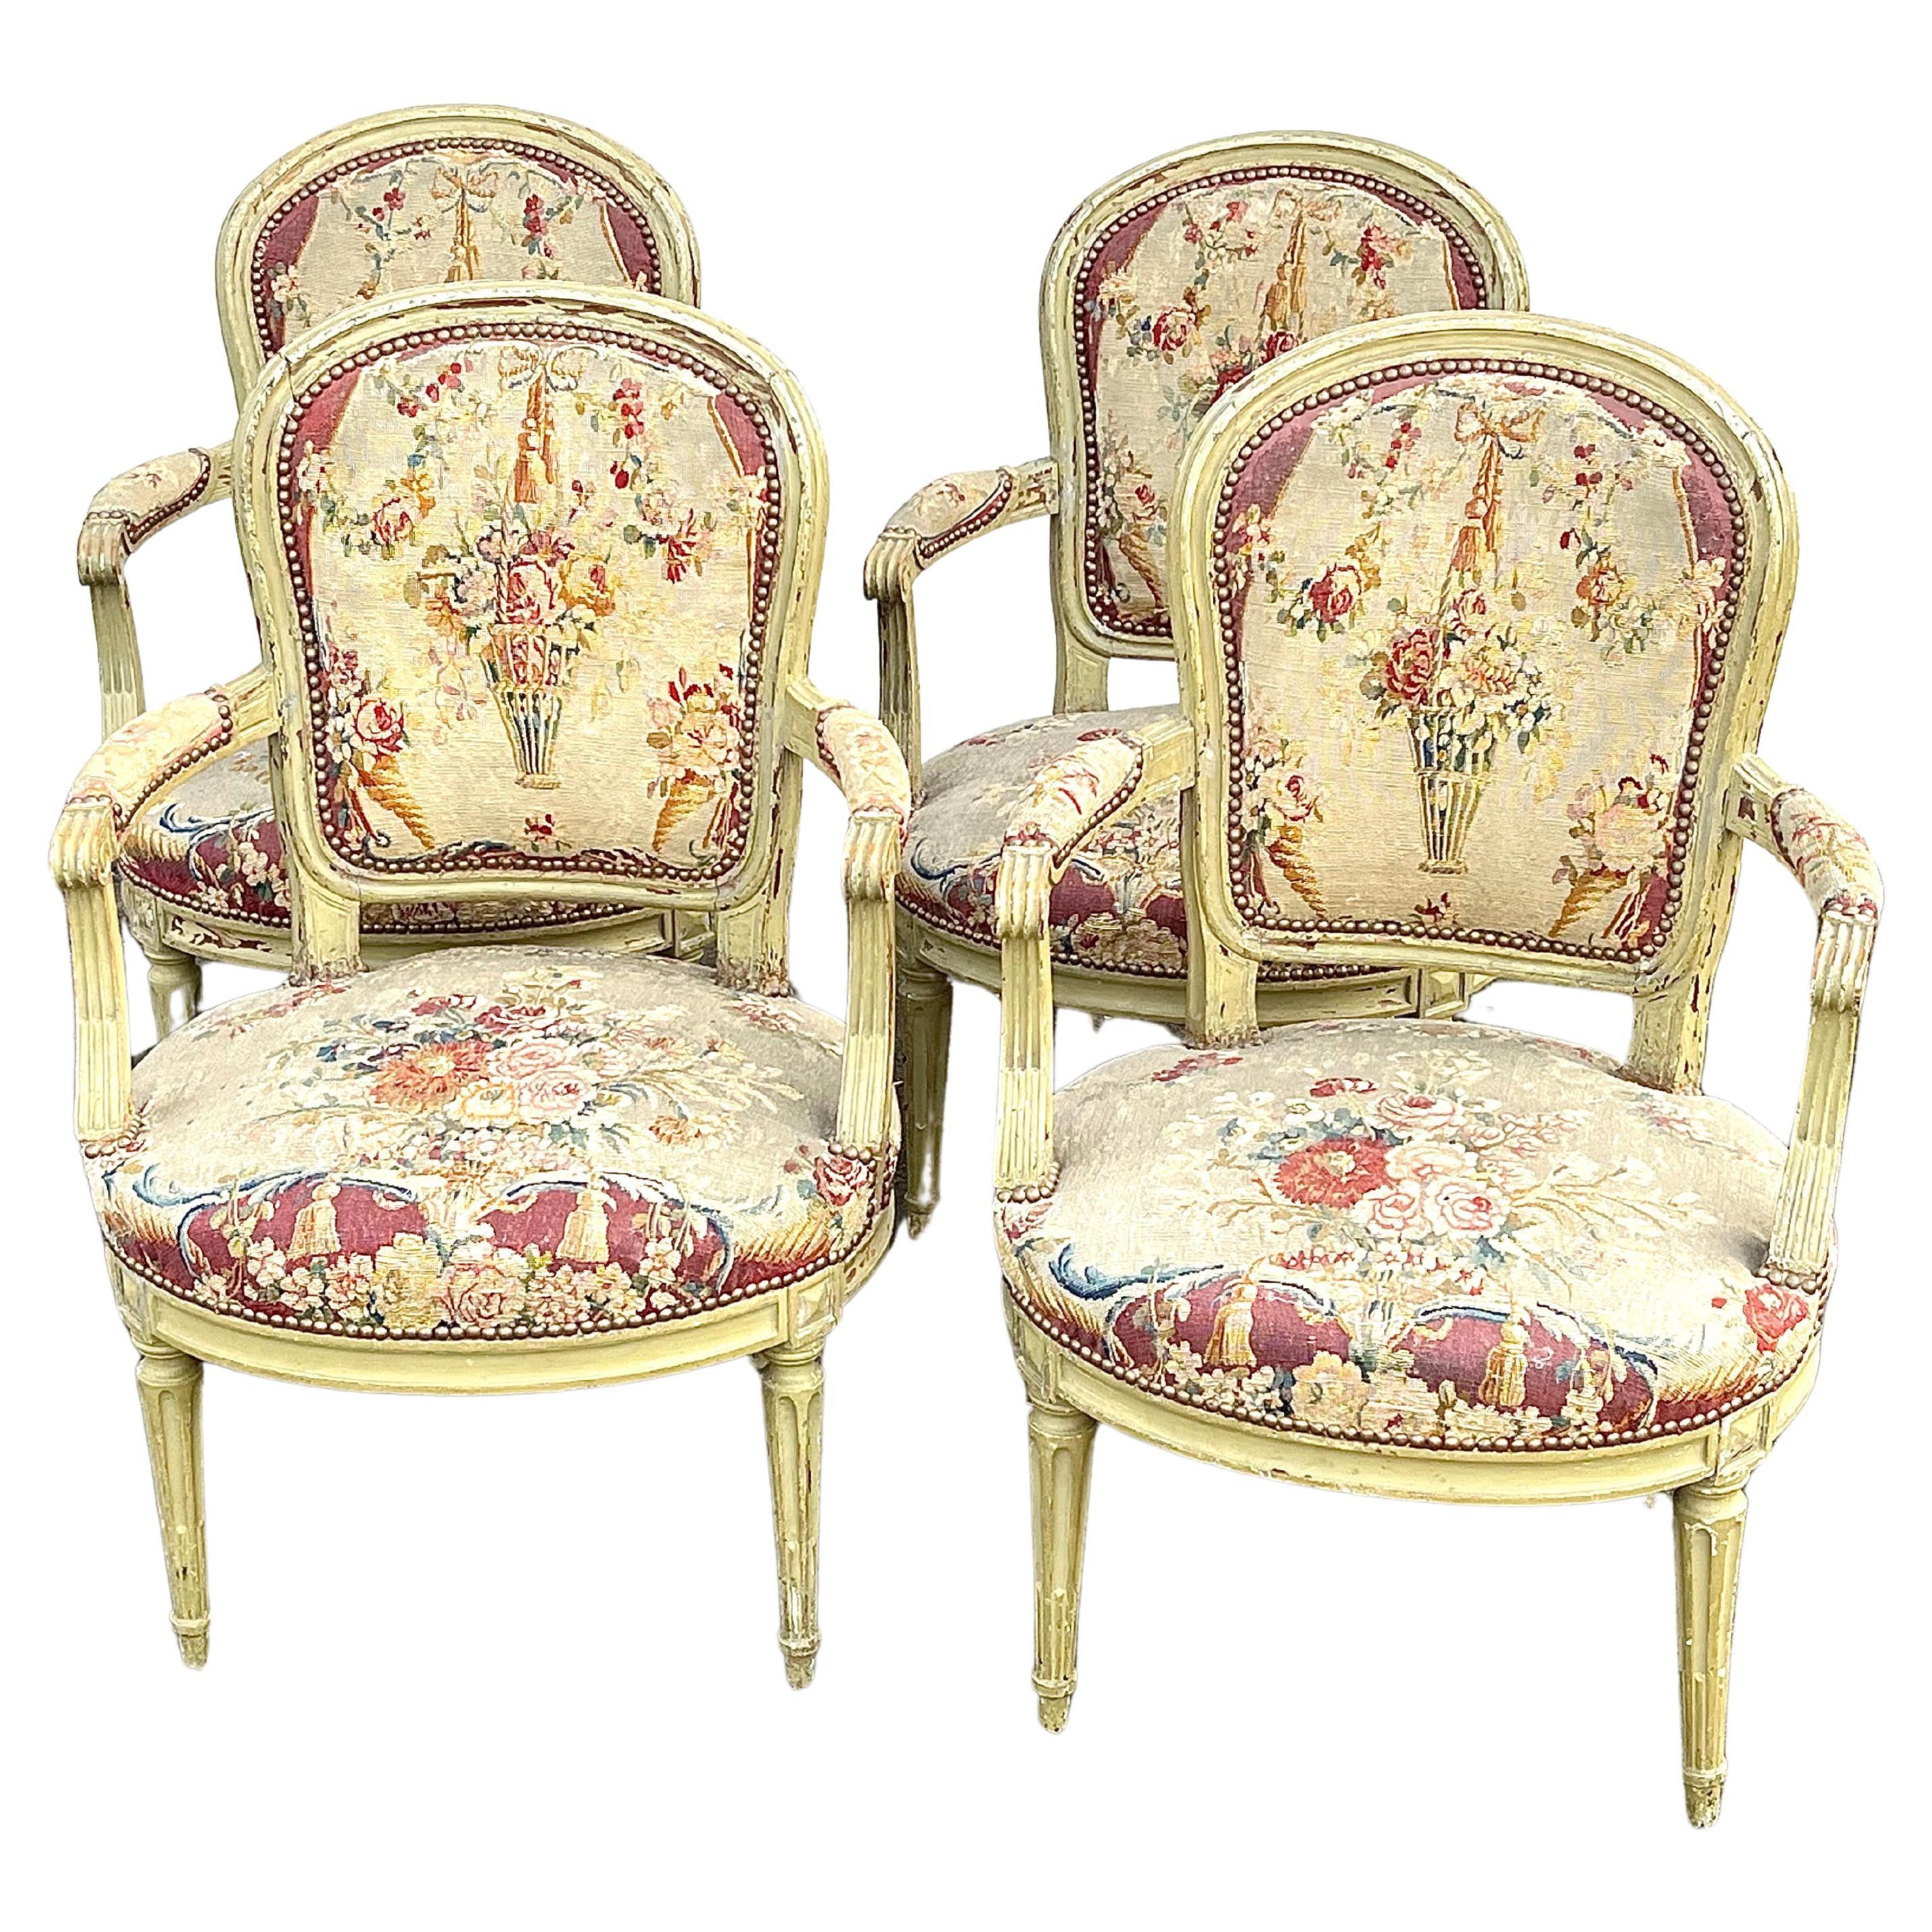 Ein Satz von 4 Fauteuils aus der Louis XVI-Periode in originaler grüner Lackierung, mit Sitzen und Rückenlehnen aus Gobelin aus dem 18. Jahrhundert, jeder Stuhl vom Hersteller auf der Sitztrage signiert 